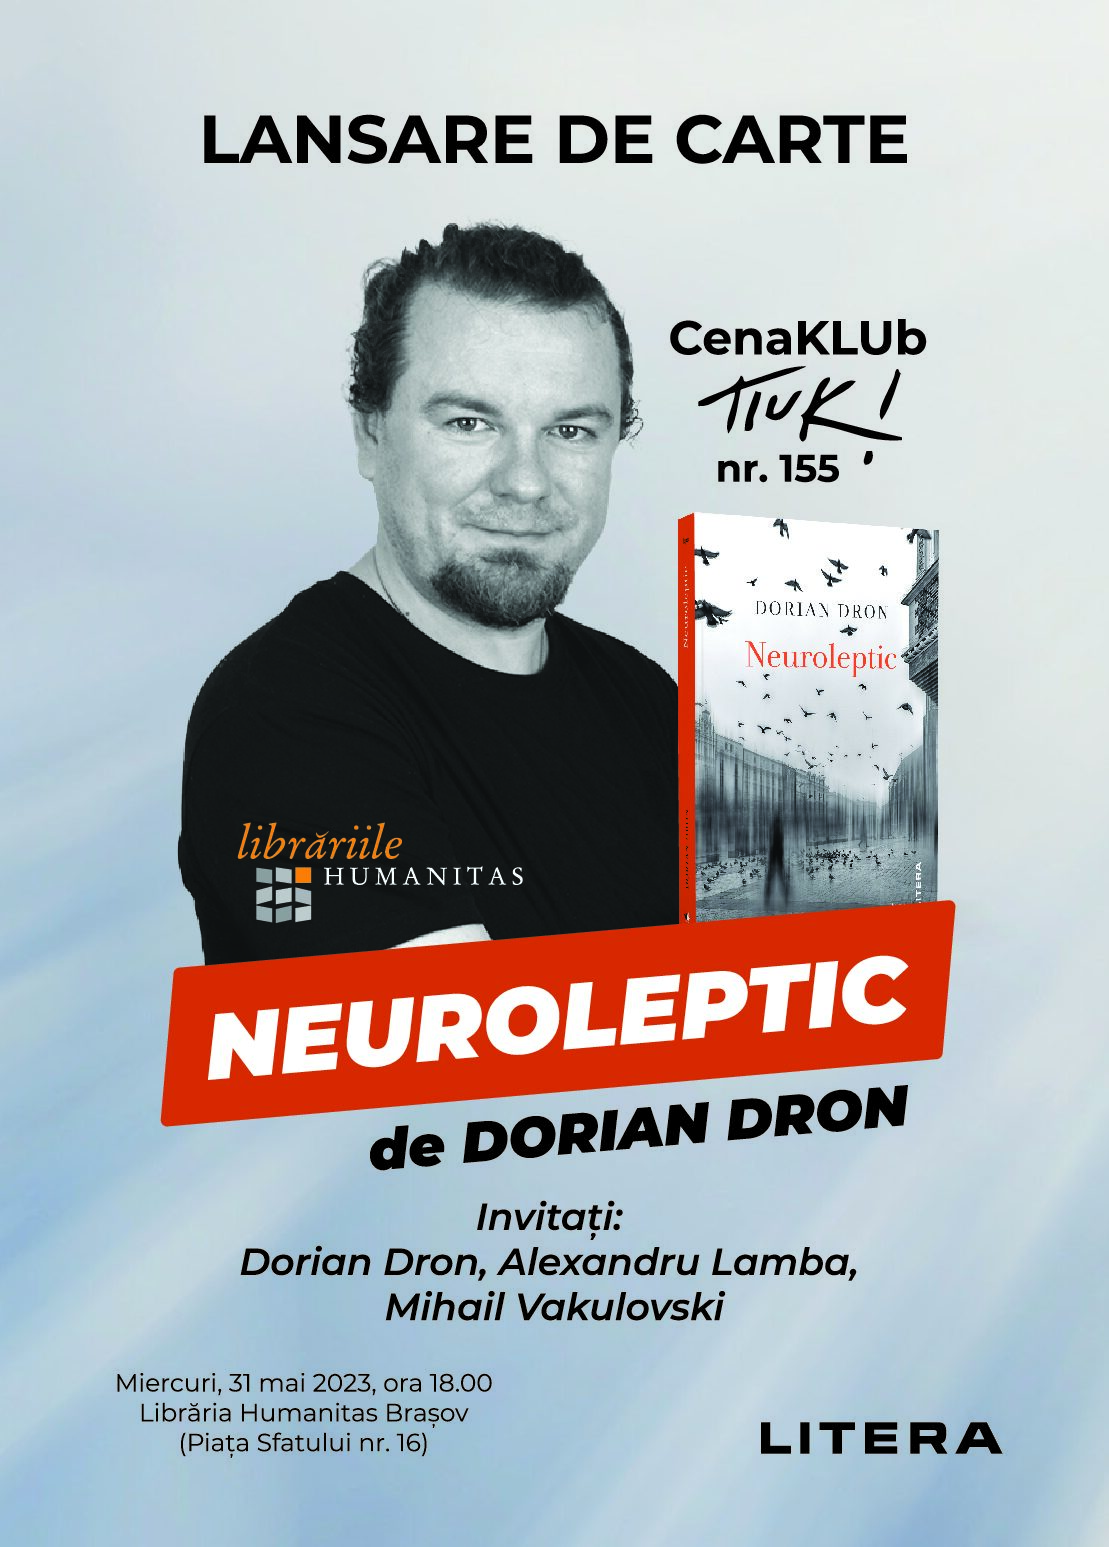 CenaKLUb Tiuk! nr. 155 – Dorian Dron